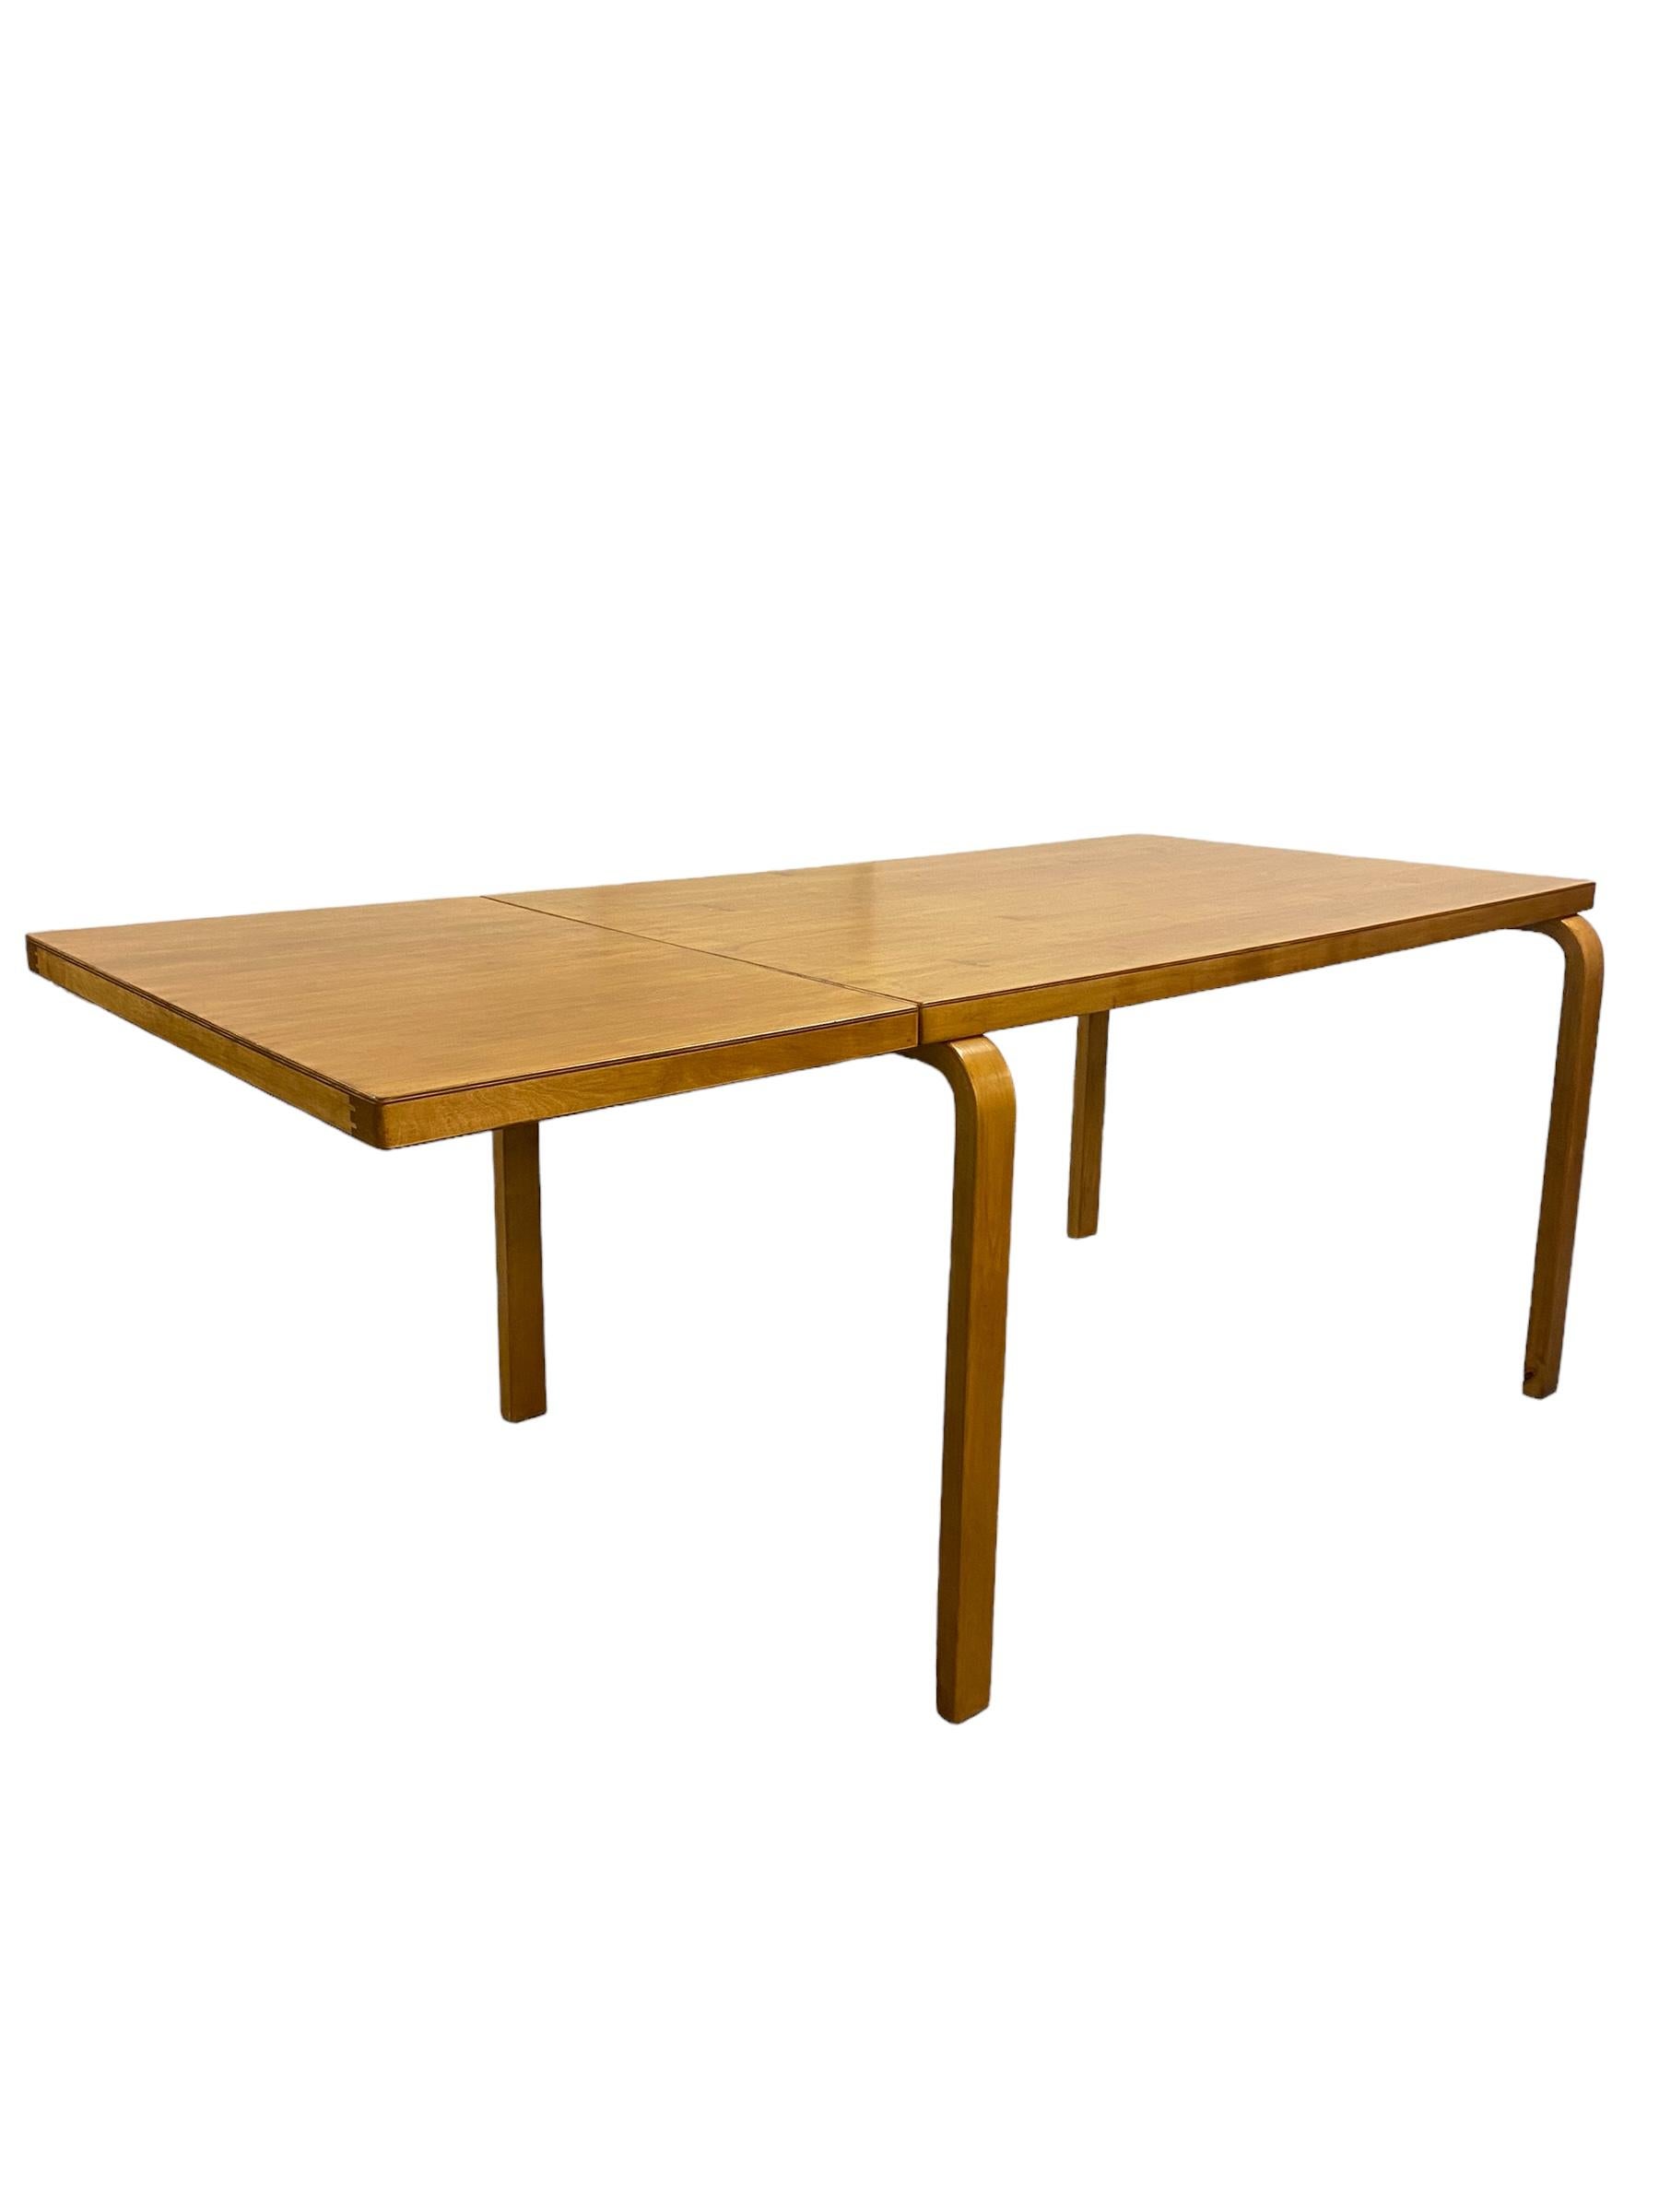 Une table pliante en bouleau avec une belle patine, conçue par Alvar Aalto et vendue par Artek dans les années 1950. La patine, qui s'est embellie avec l'âge et l'utilisation pendant plus de 70 ans, est exactement ce qui rend cette pièce si unique.